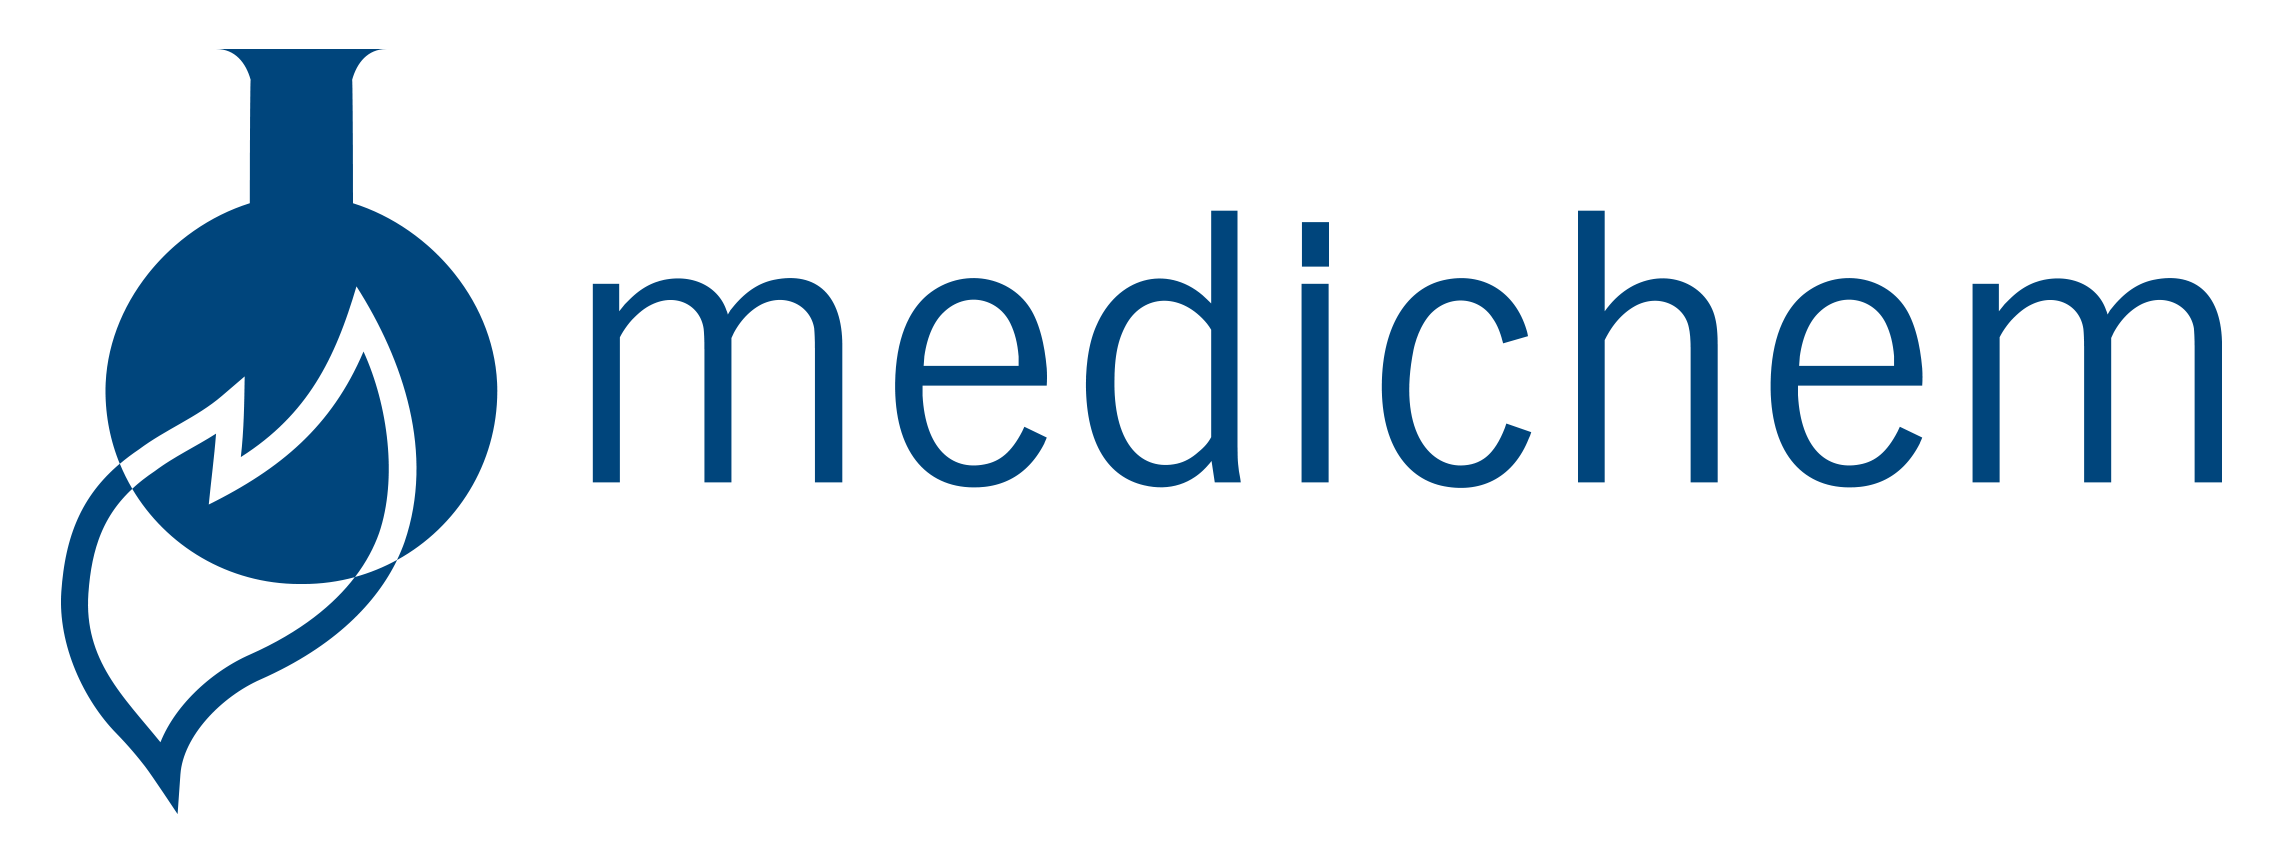 Medichem logo in blue and transparent background